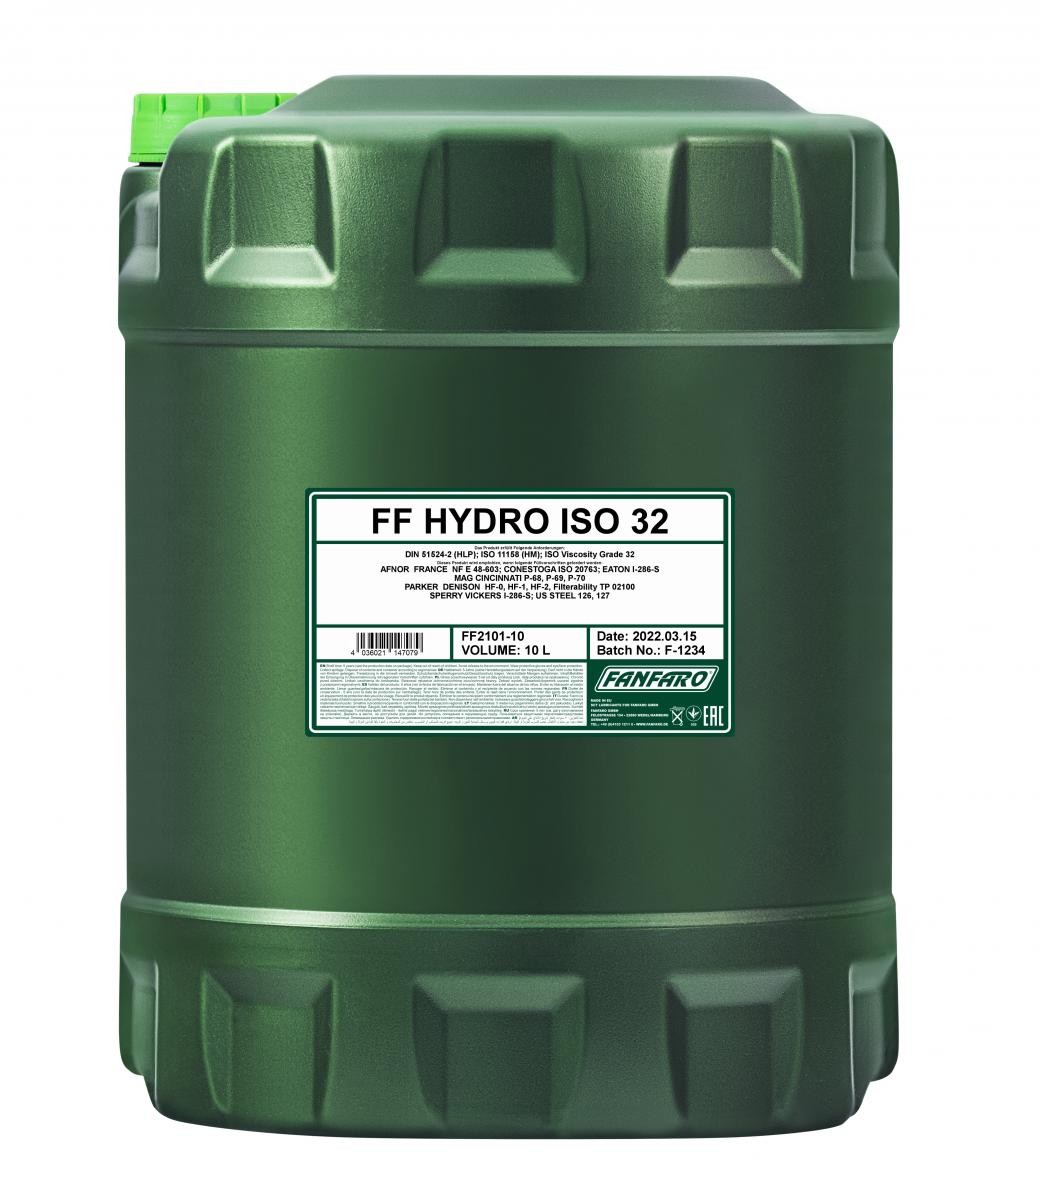 FANFARO Hydro, ISO 32 FF2101-10 Hydraulic Oil Capacity: 10l